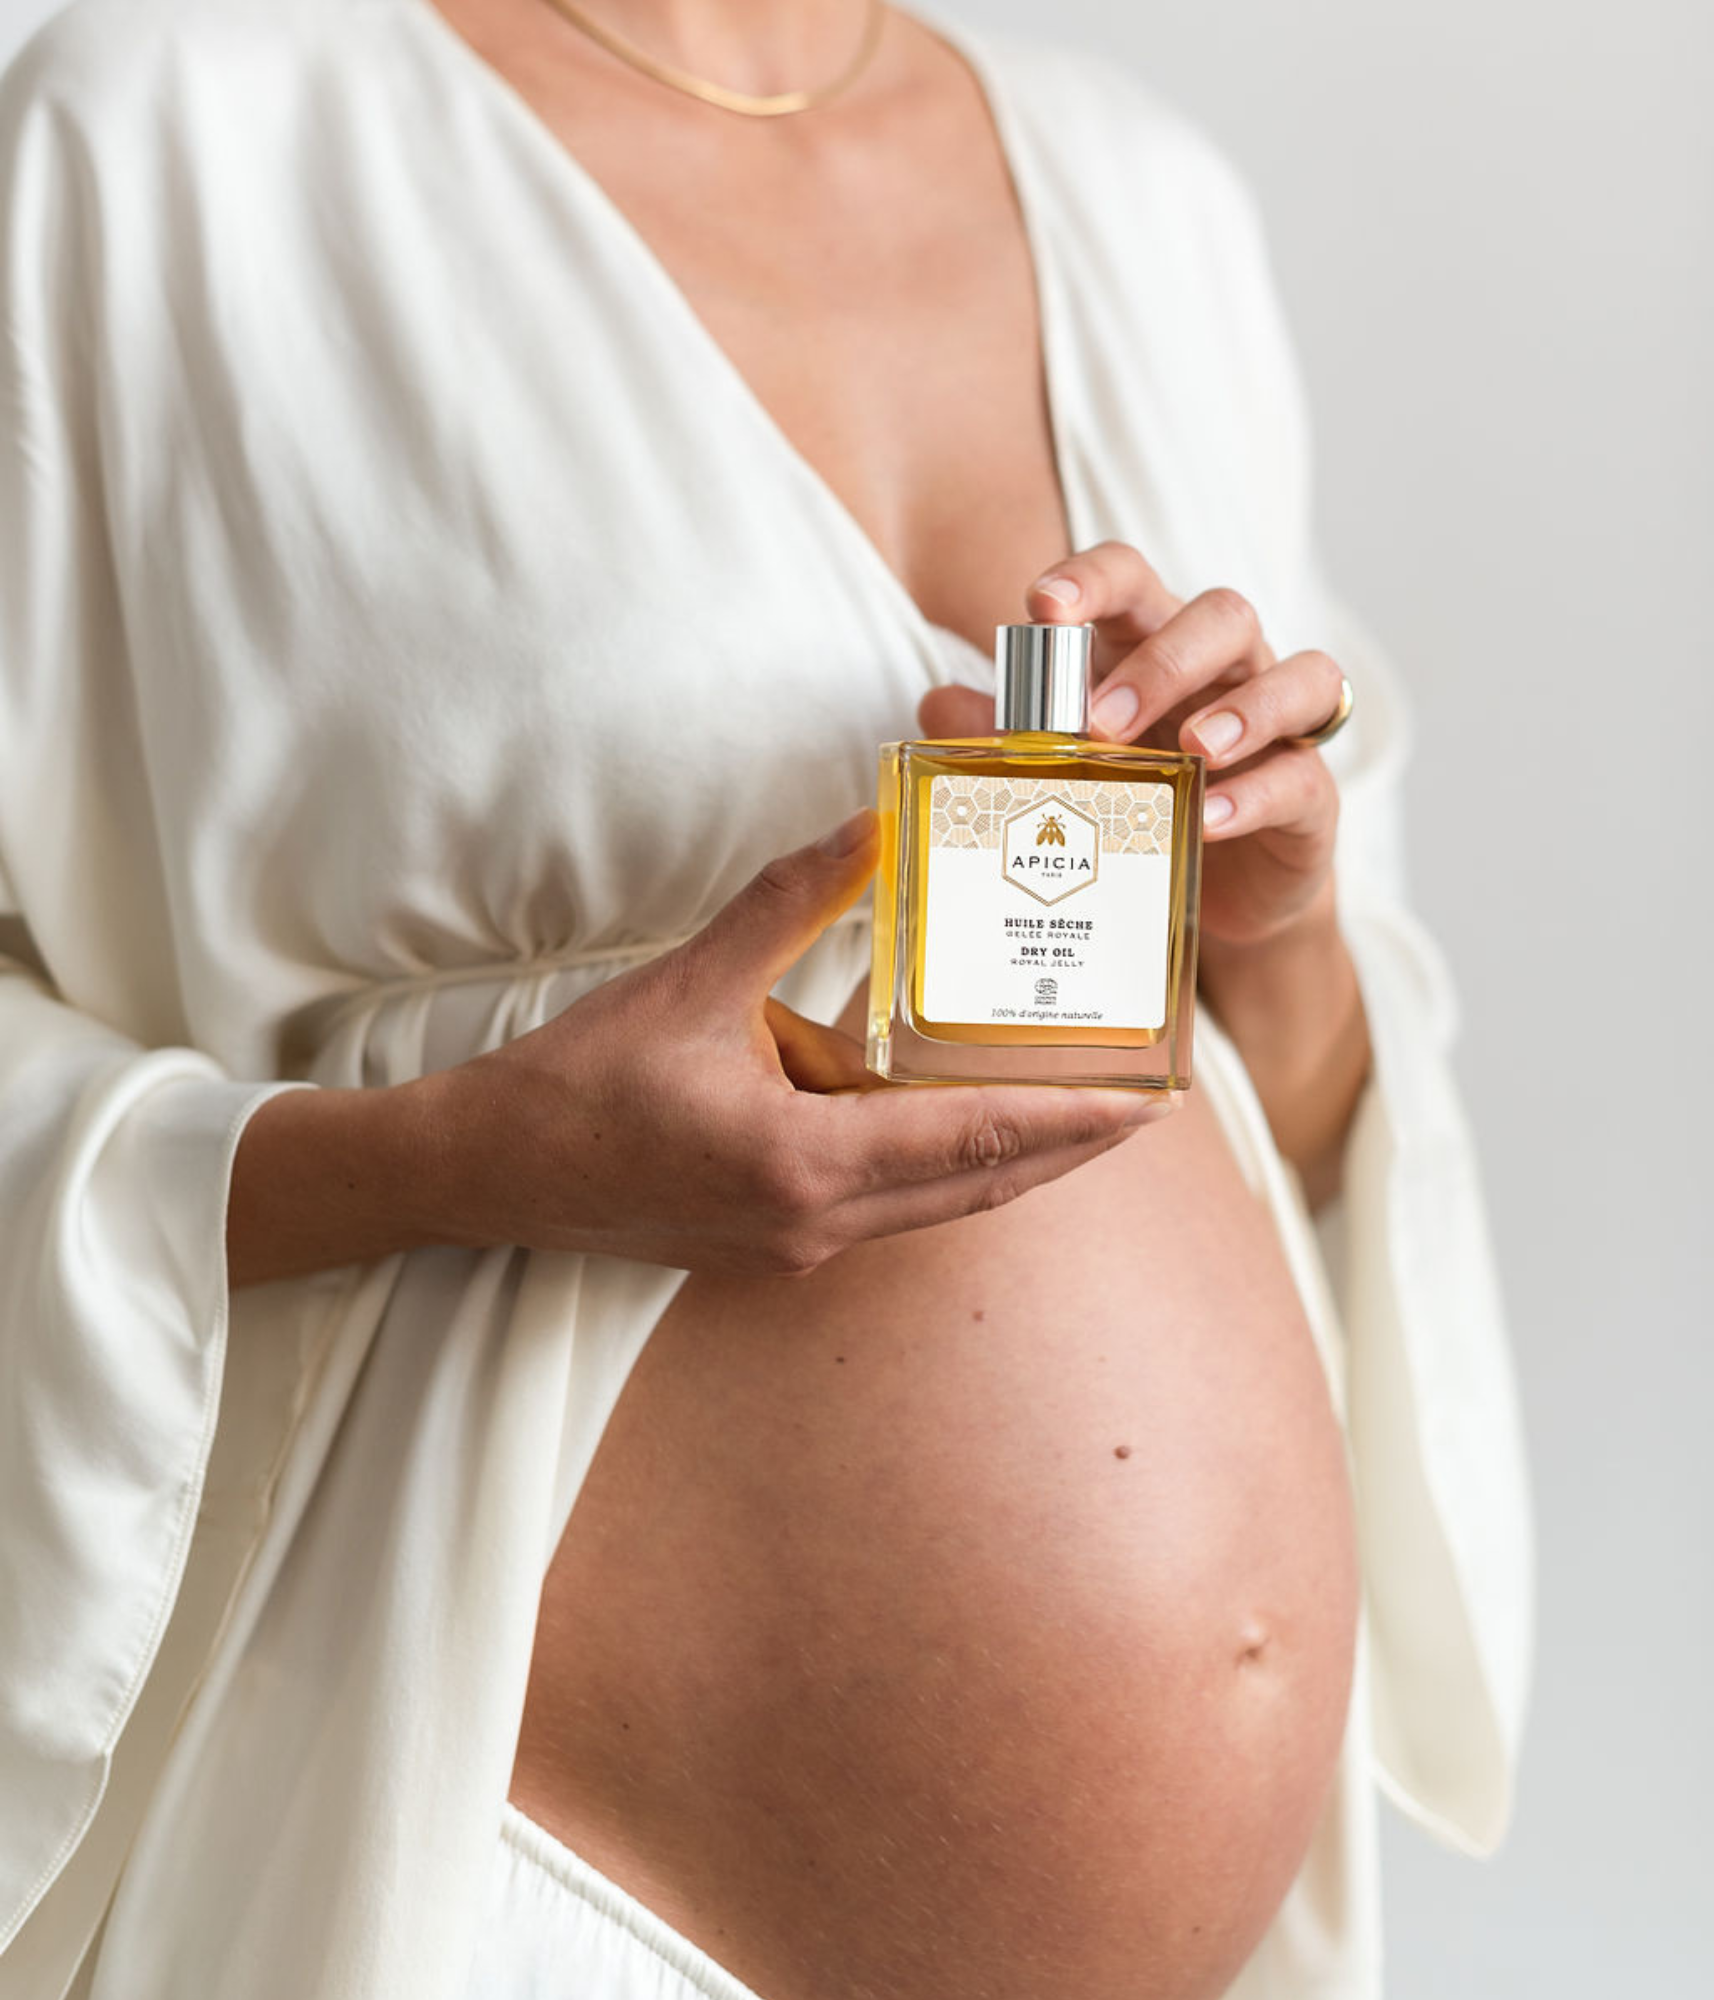 Femme enceinte tenant un flacon rectangulaire en verre transparent contenant de l’huile dans ses deux mains qui reposent près de son ventre.